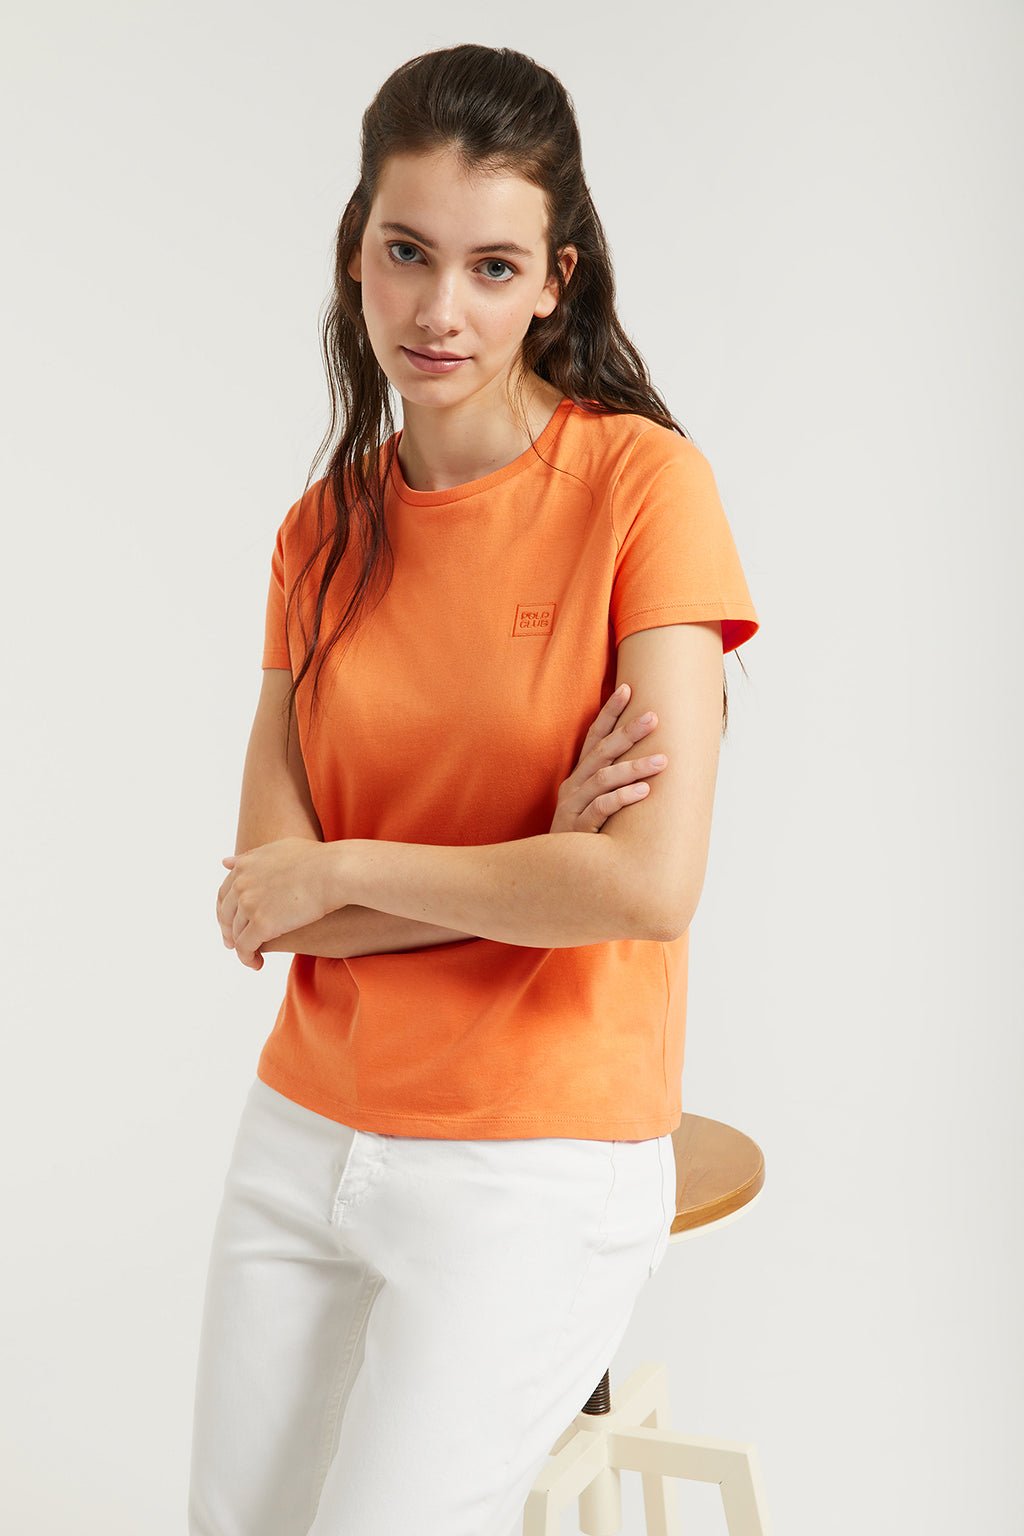 Camiseta de manga corta para mujer, 100% algodón, color naranja, talla  XXXL, Naranja